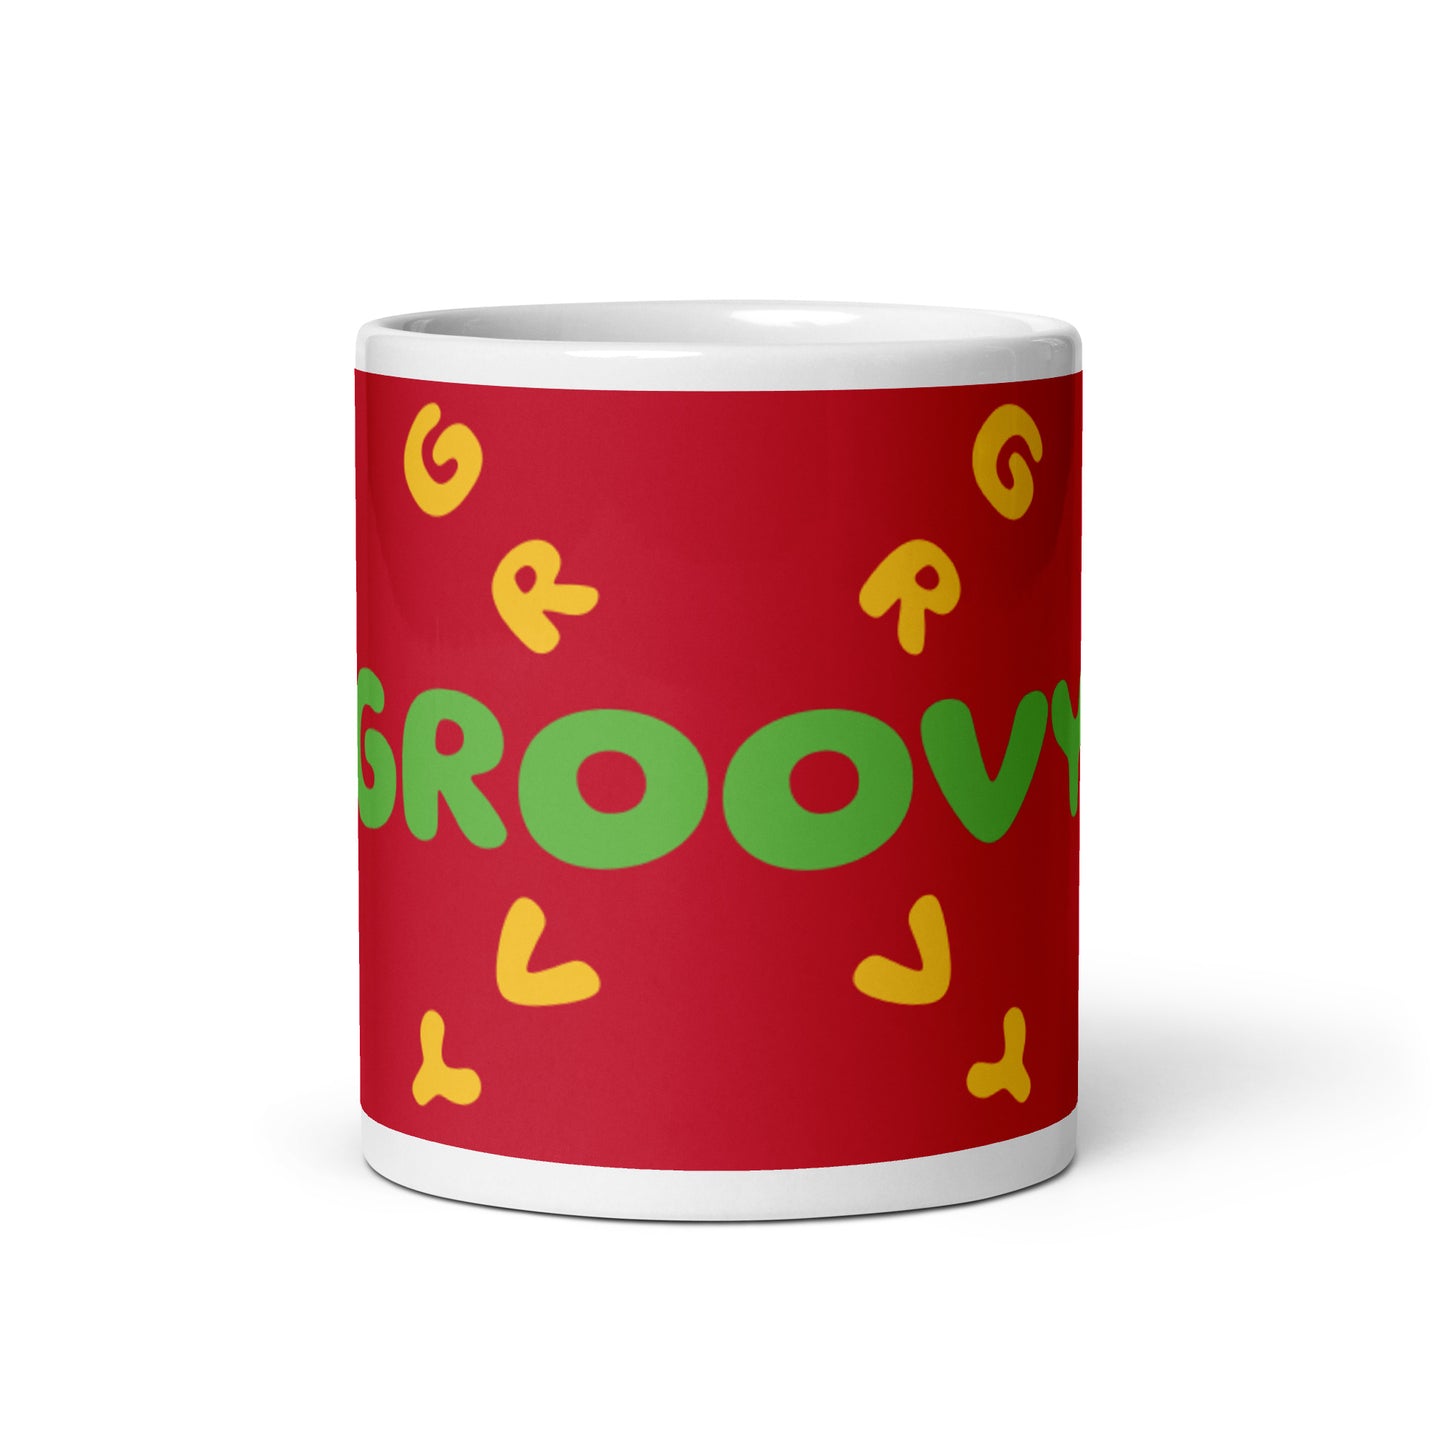 Maroon White Glossy Mug - Groovy